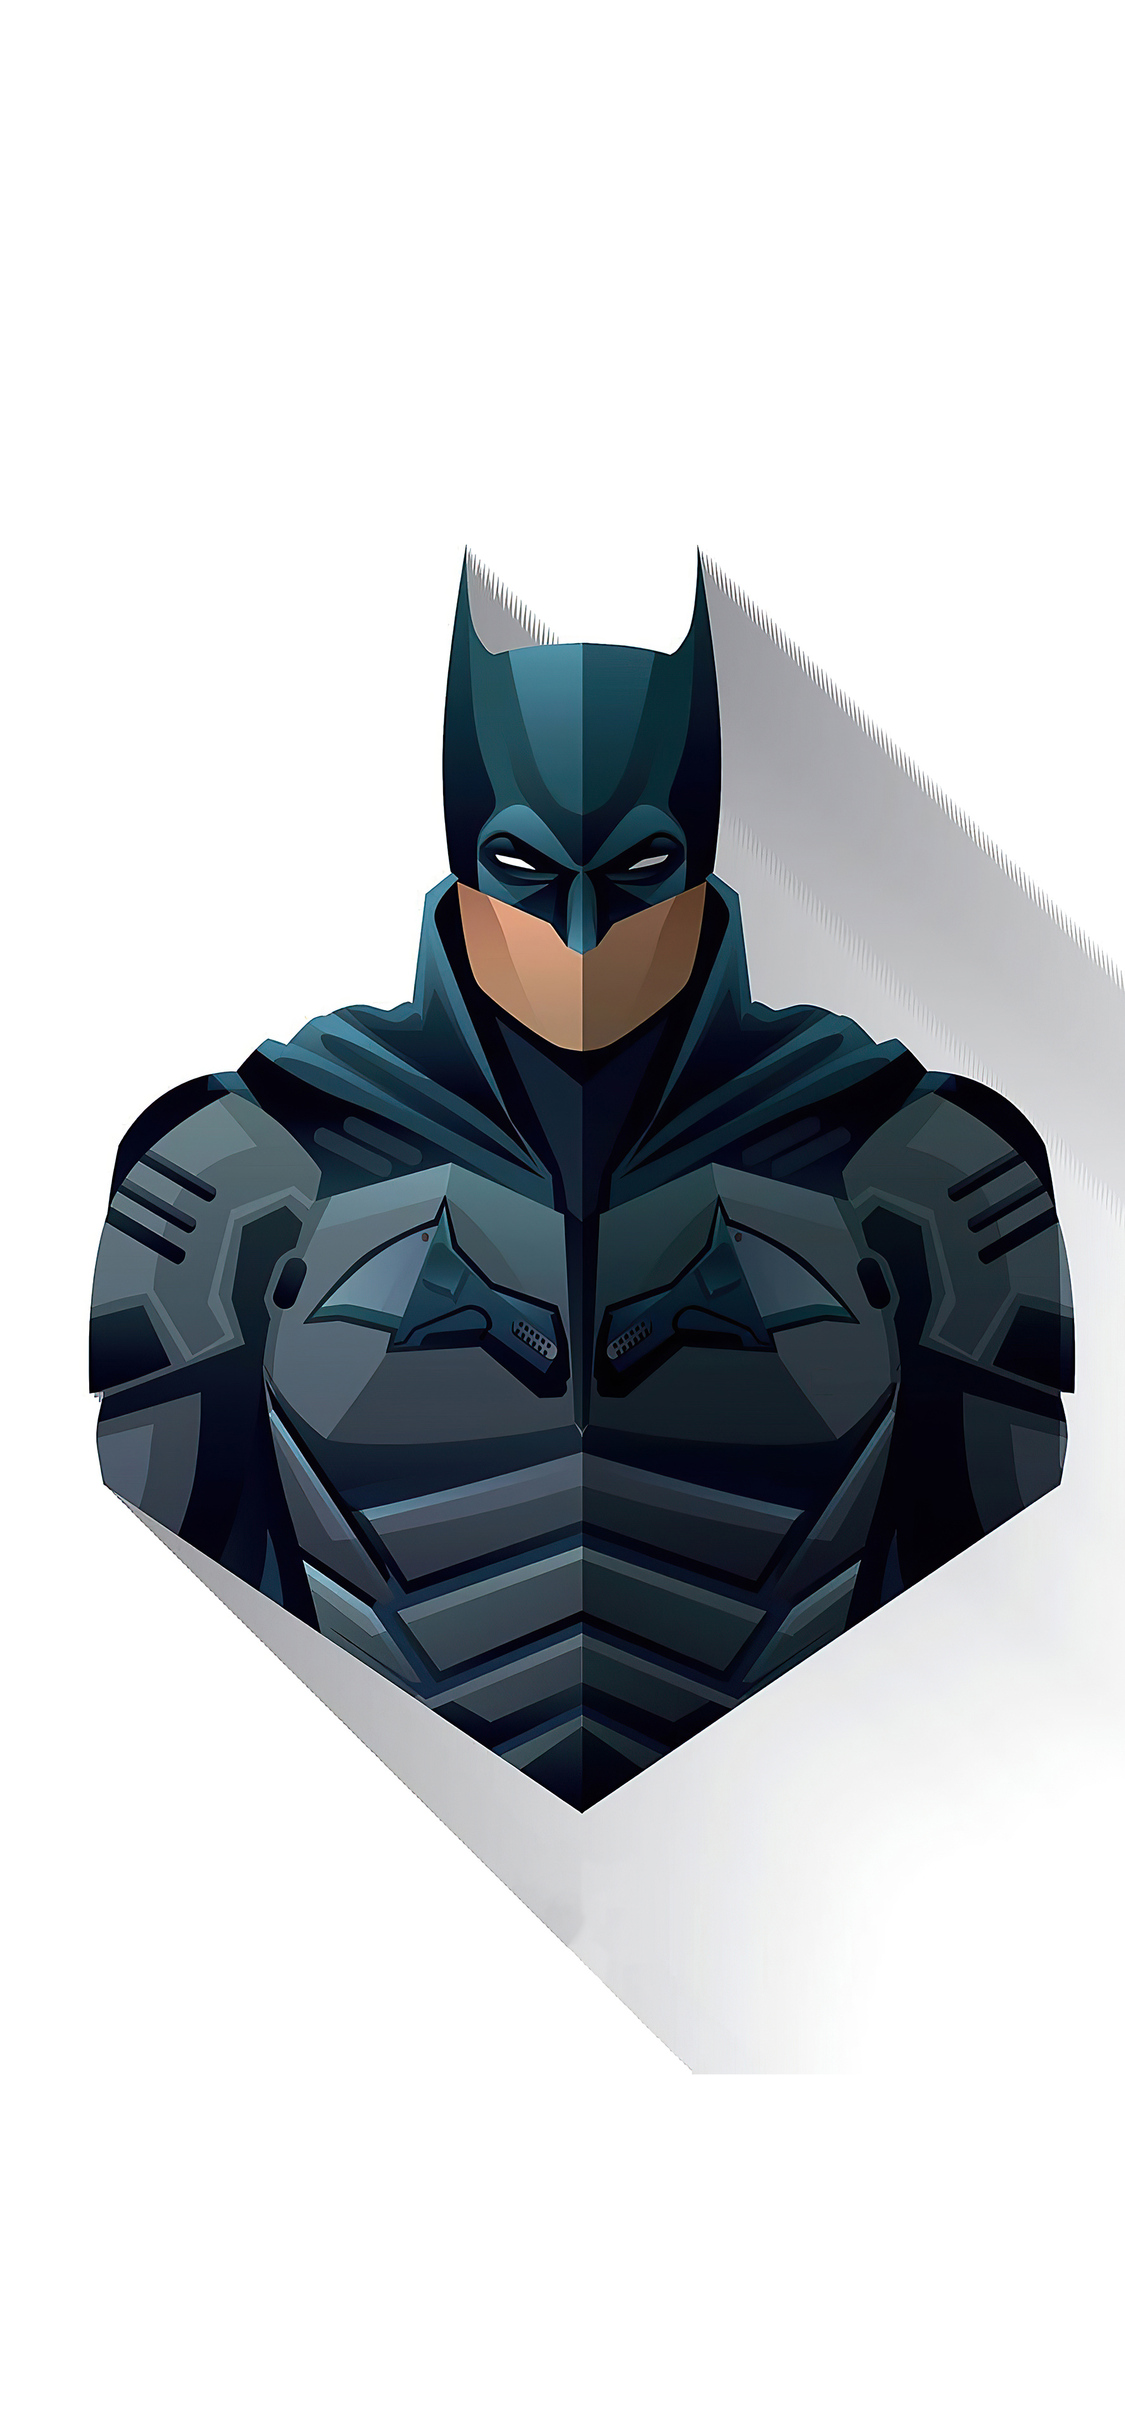 The Batman 2021 4K Minimalism Wallpapers